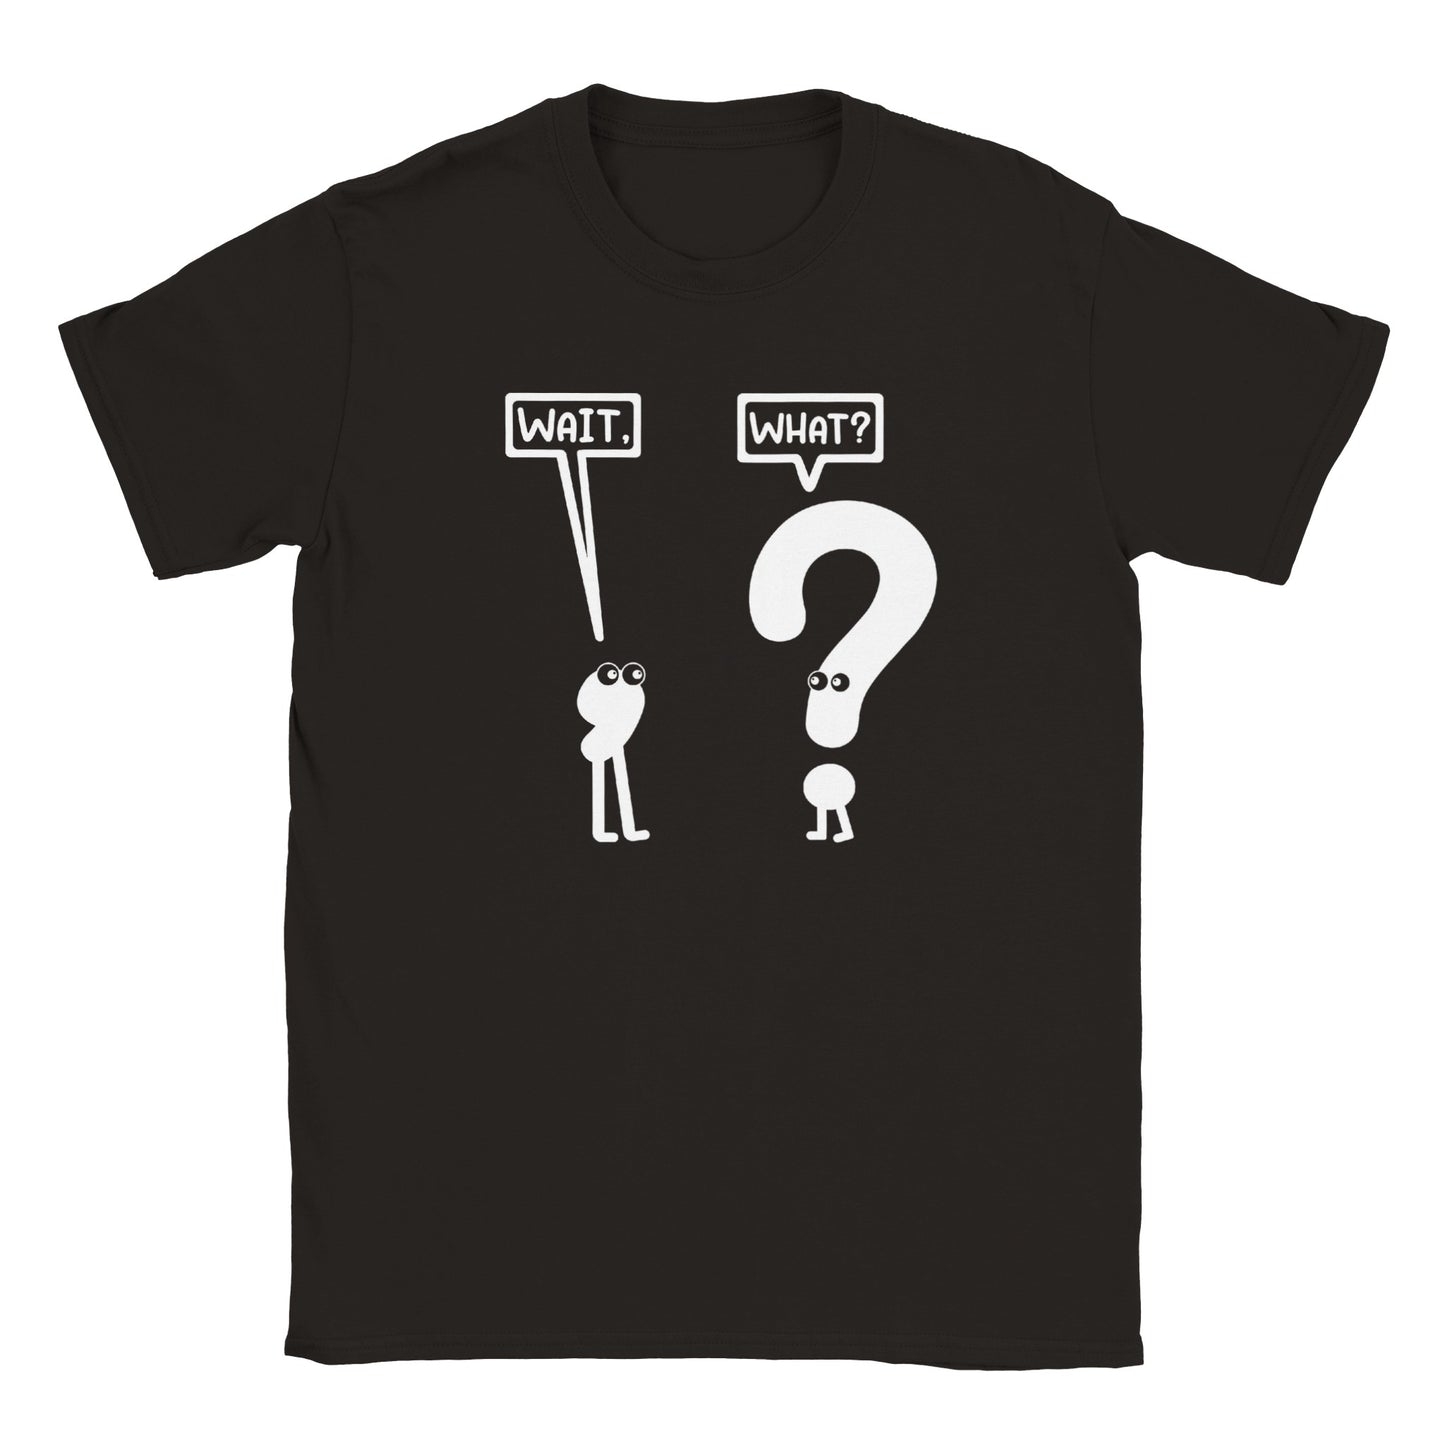 Wait, What? - Classic Unisex Crewneck T-shirt - Mister Snarky's